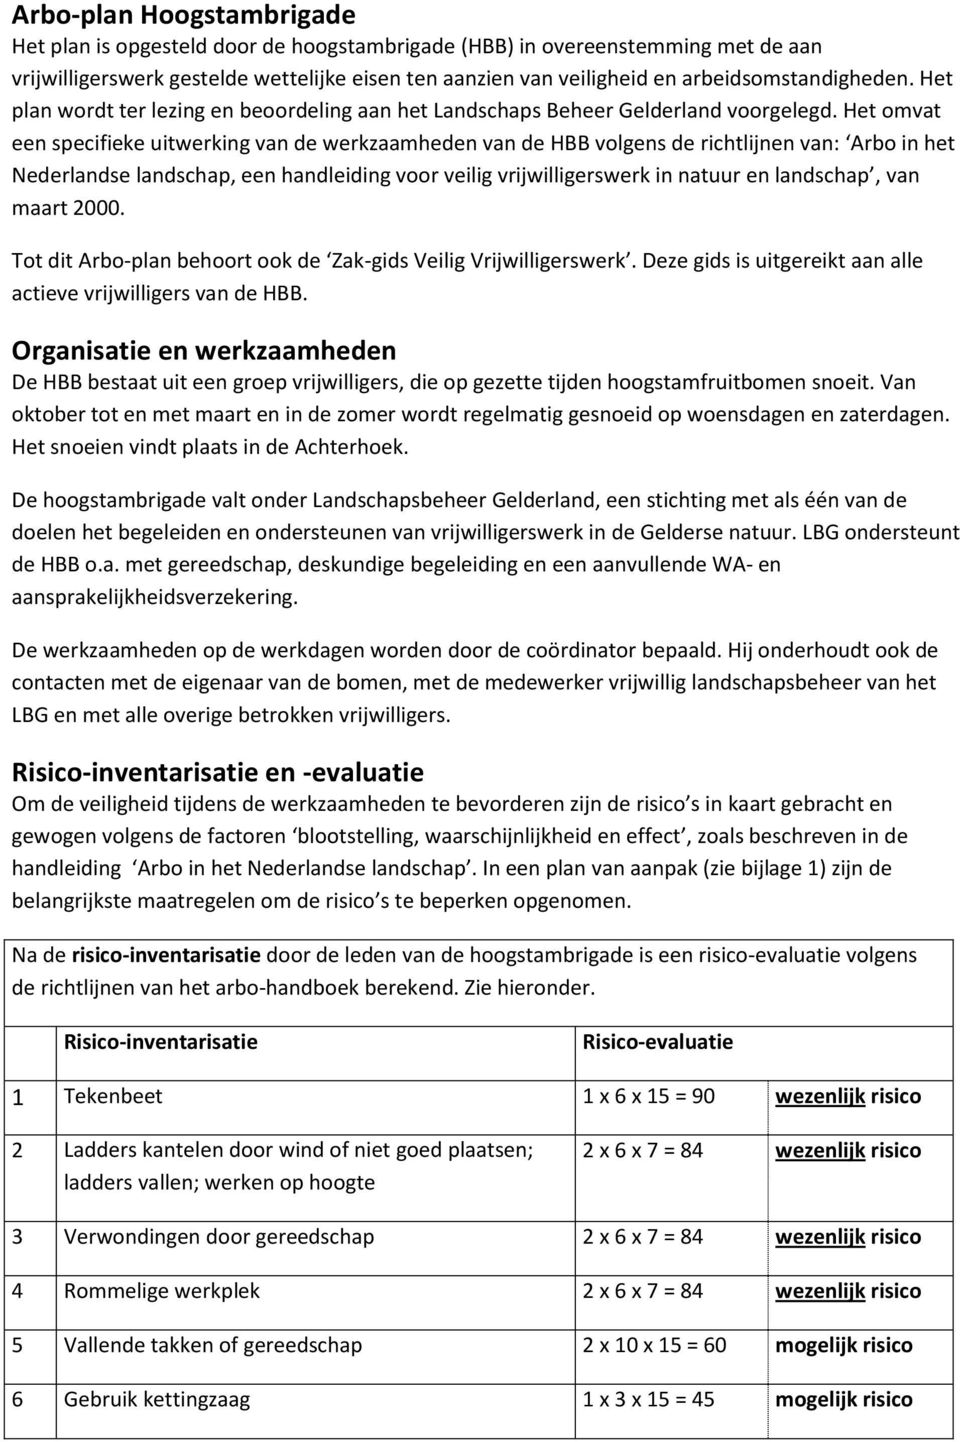 Het omvat een specifieke uitwerking van de werkzaamheden van de HBB volgens de richtlijnen van: Arbo in het Nederlandse landschap, een handleiding voor veilig vrijwilligerswerk in natuur en